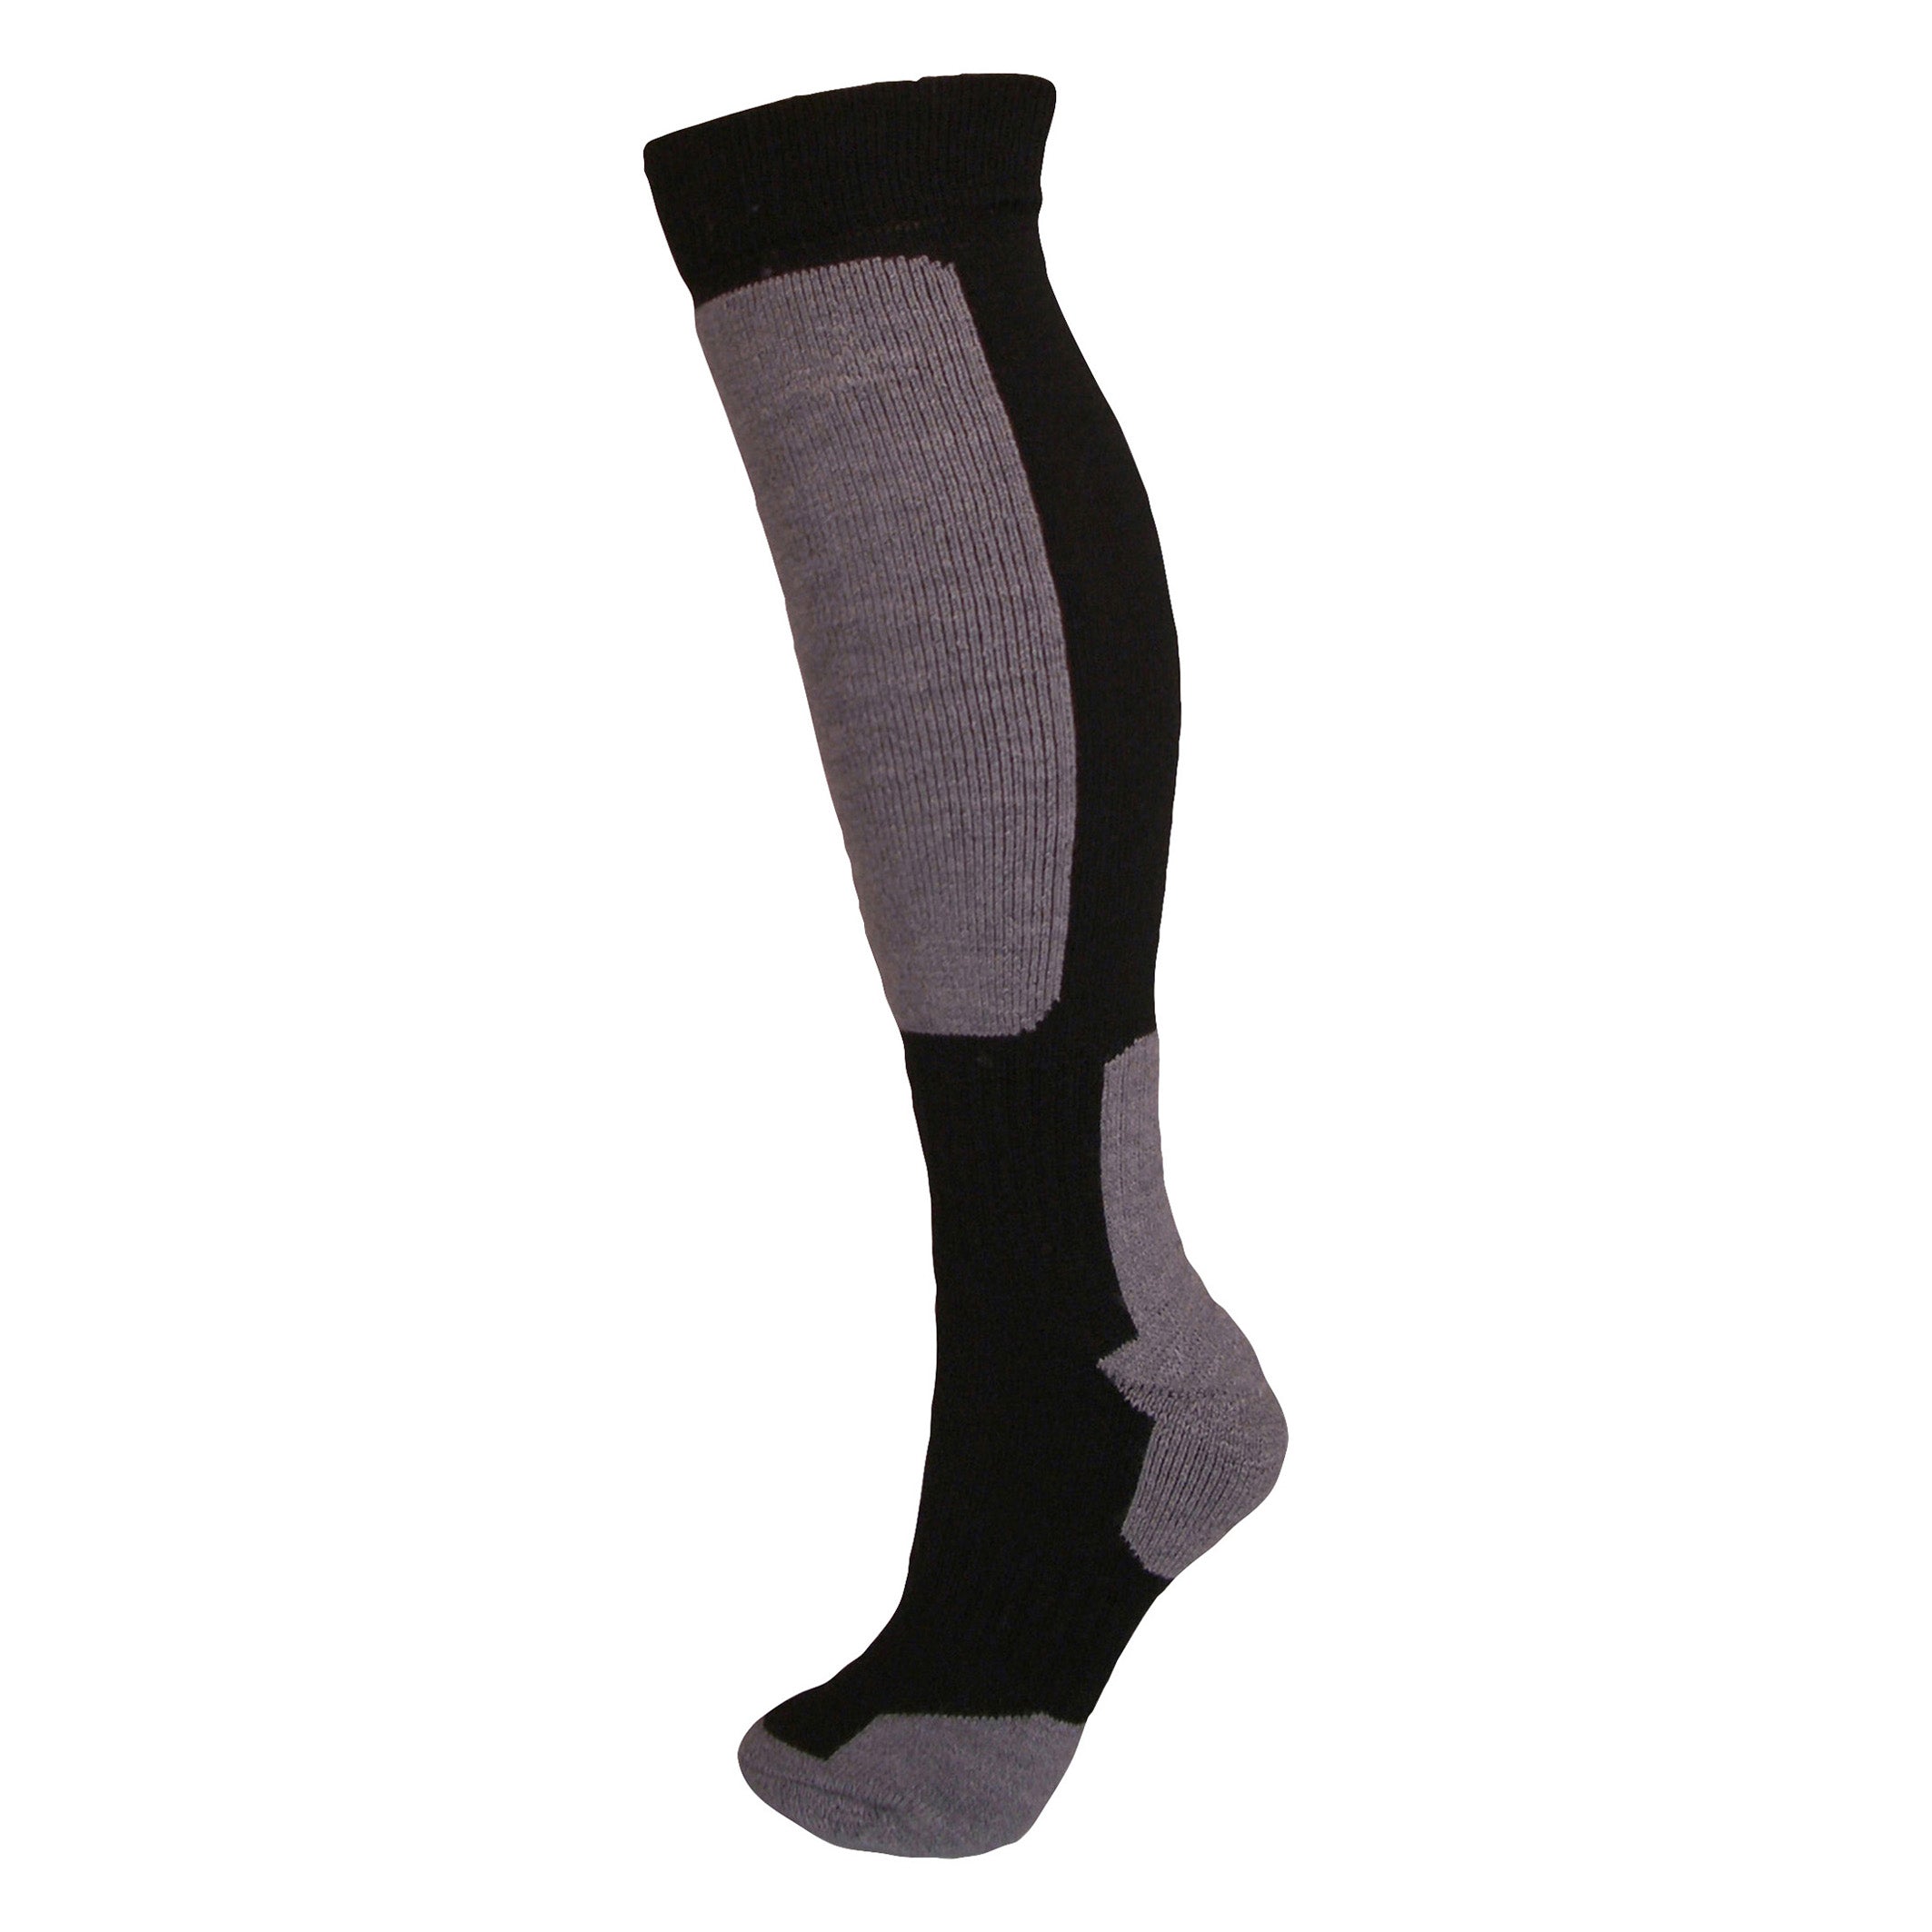 Snow-tec Sock Socks Winter Sports Accessories | Manbi – Manbi / Park ...